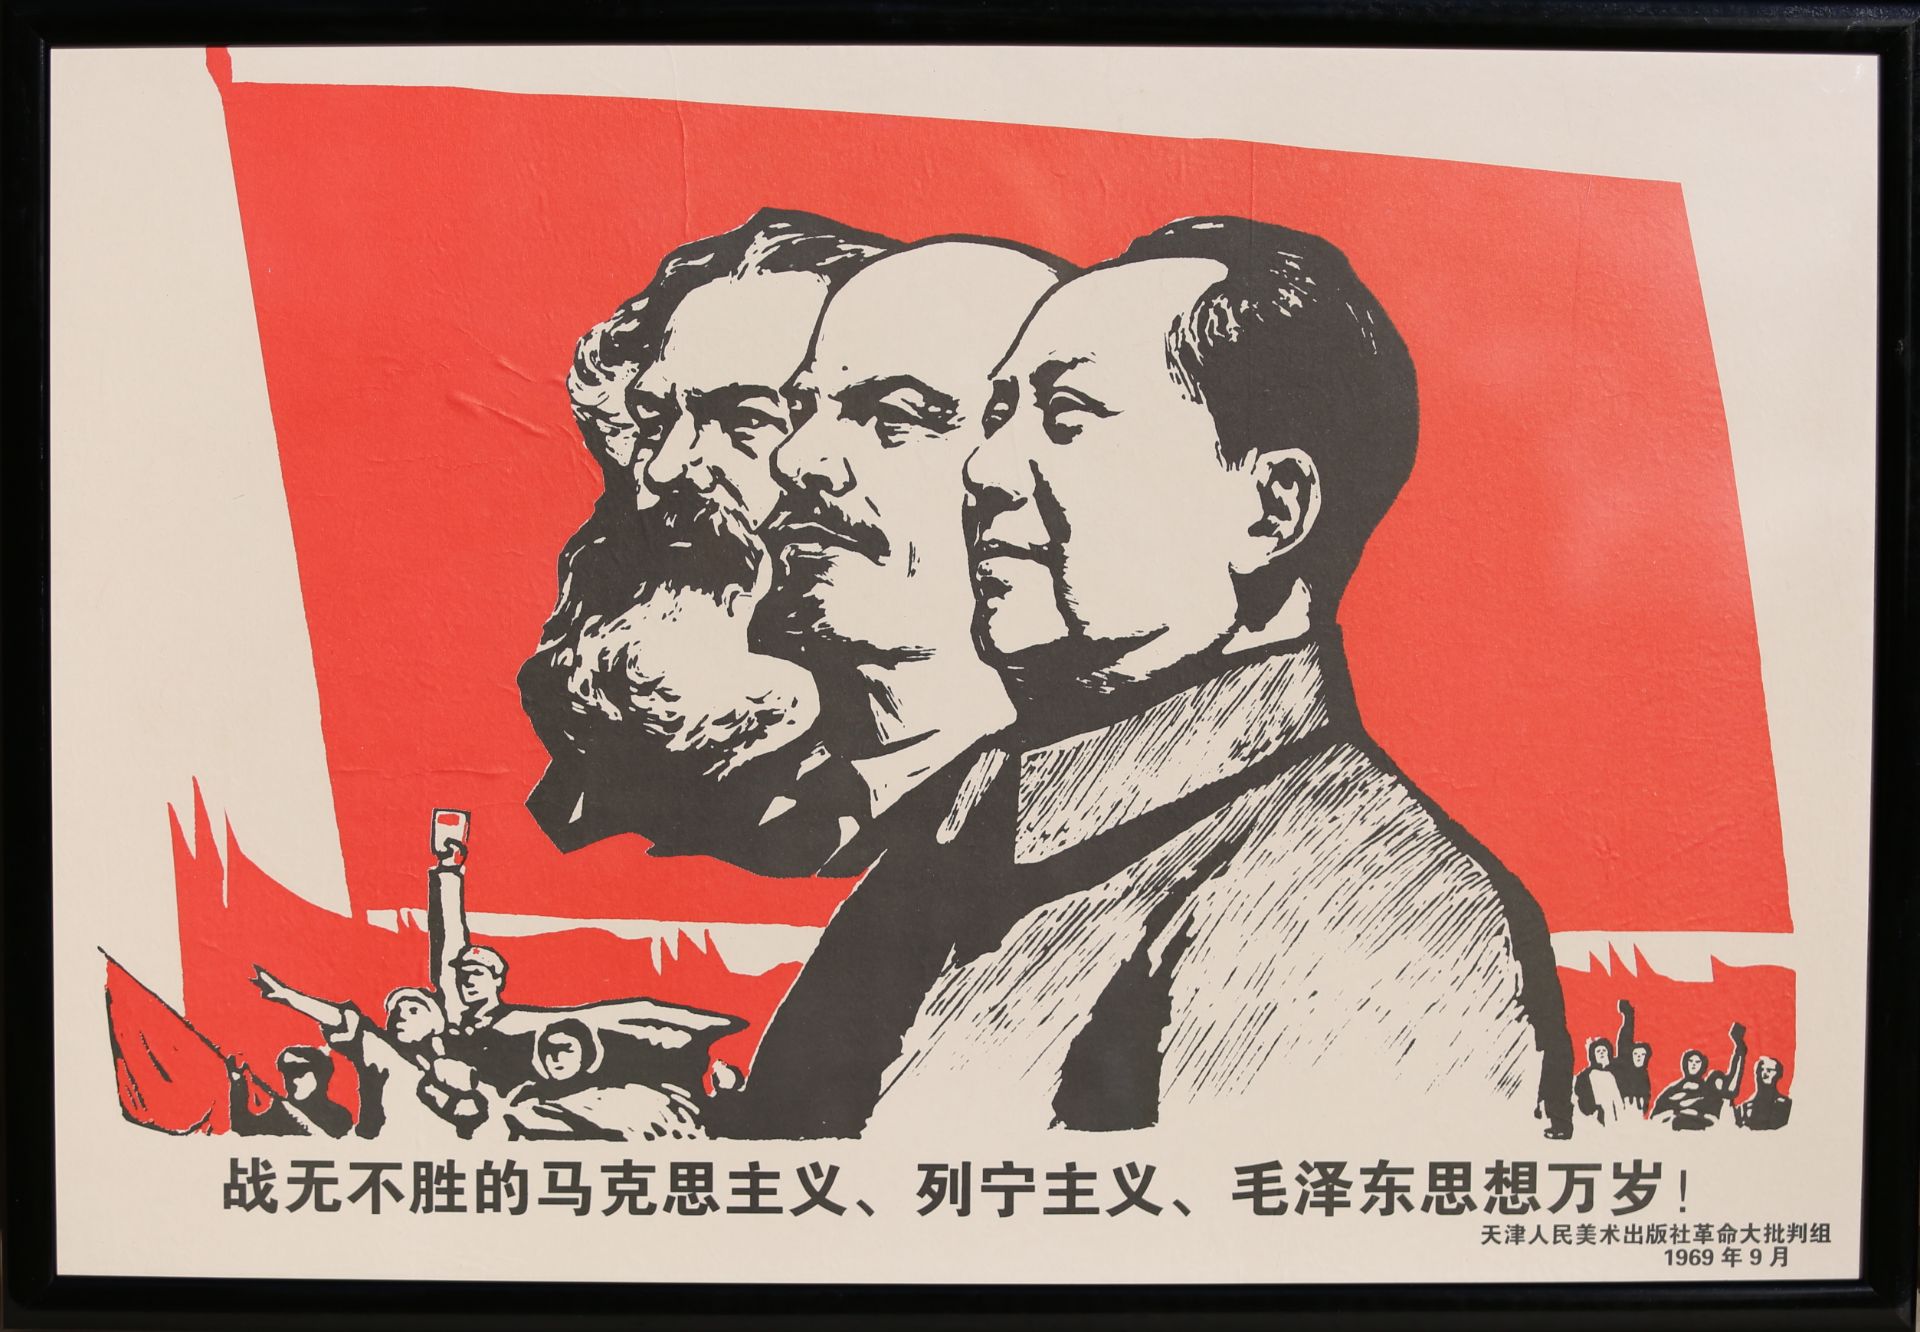 12 Affiches de propagande de la révolution culturelle chinoise Encadrée 75cm x 52cm - Image 6 of 12